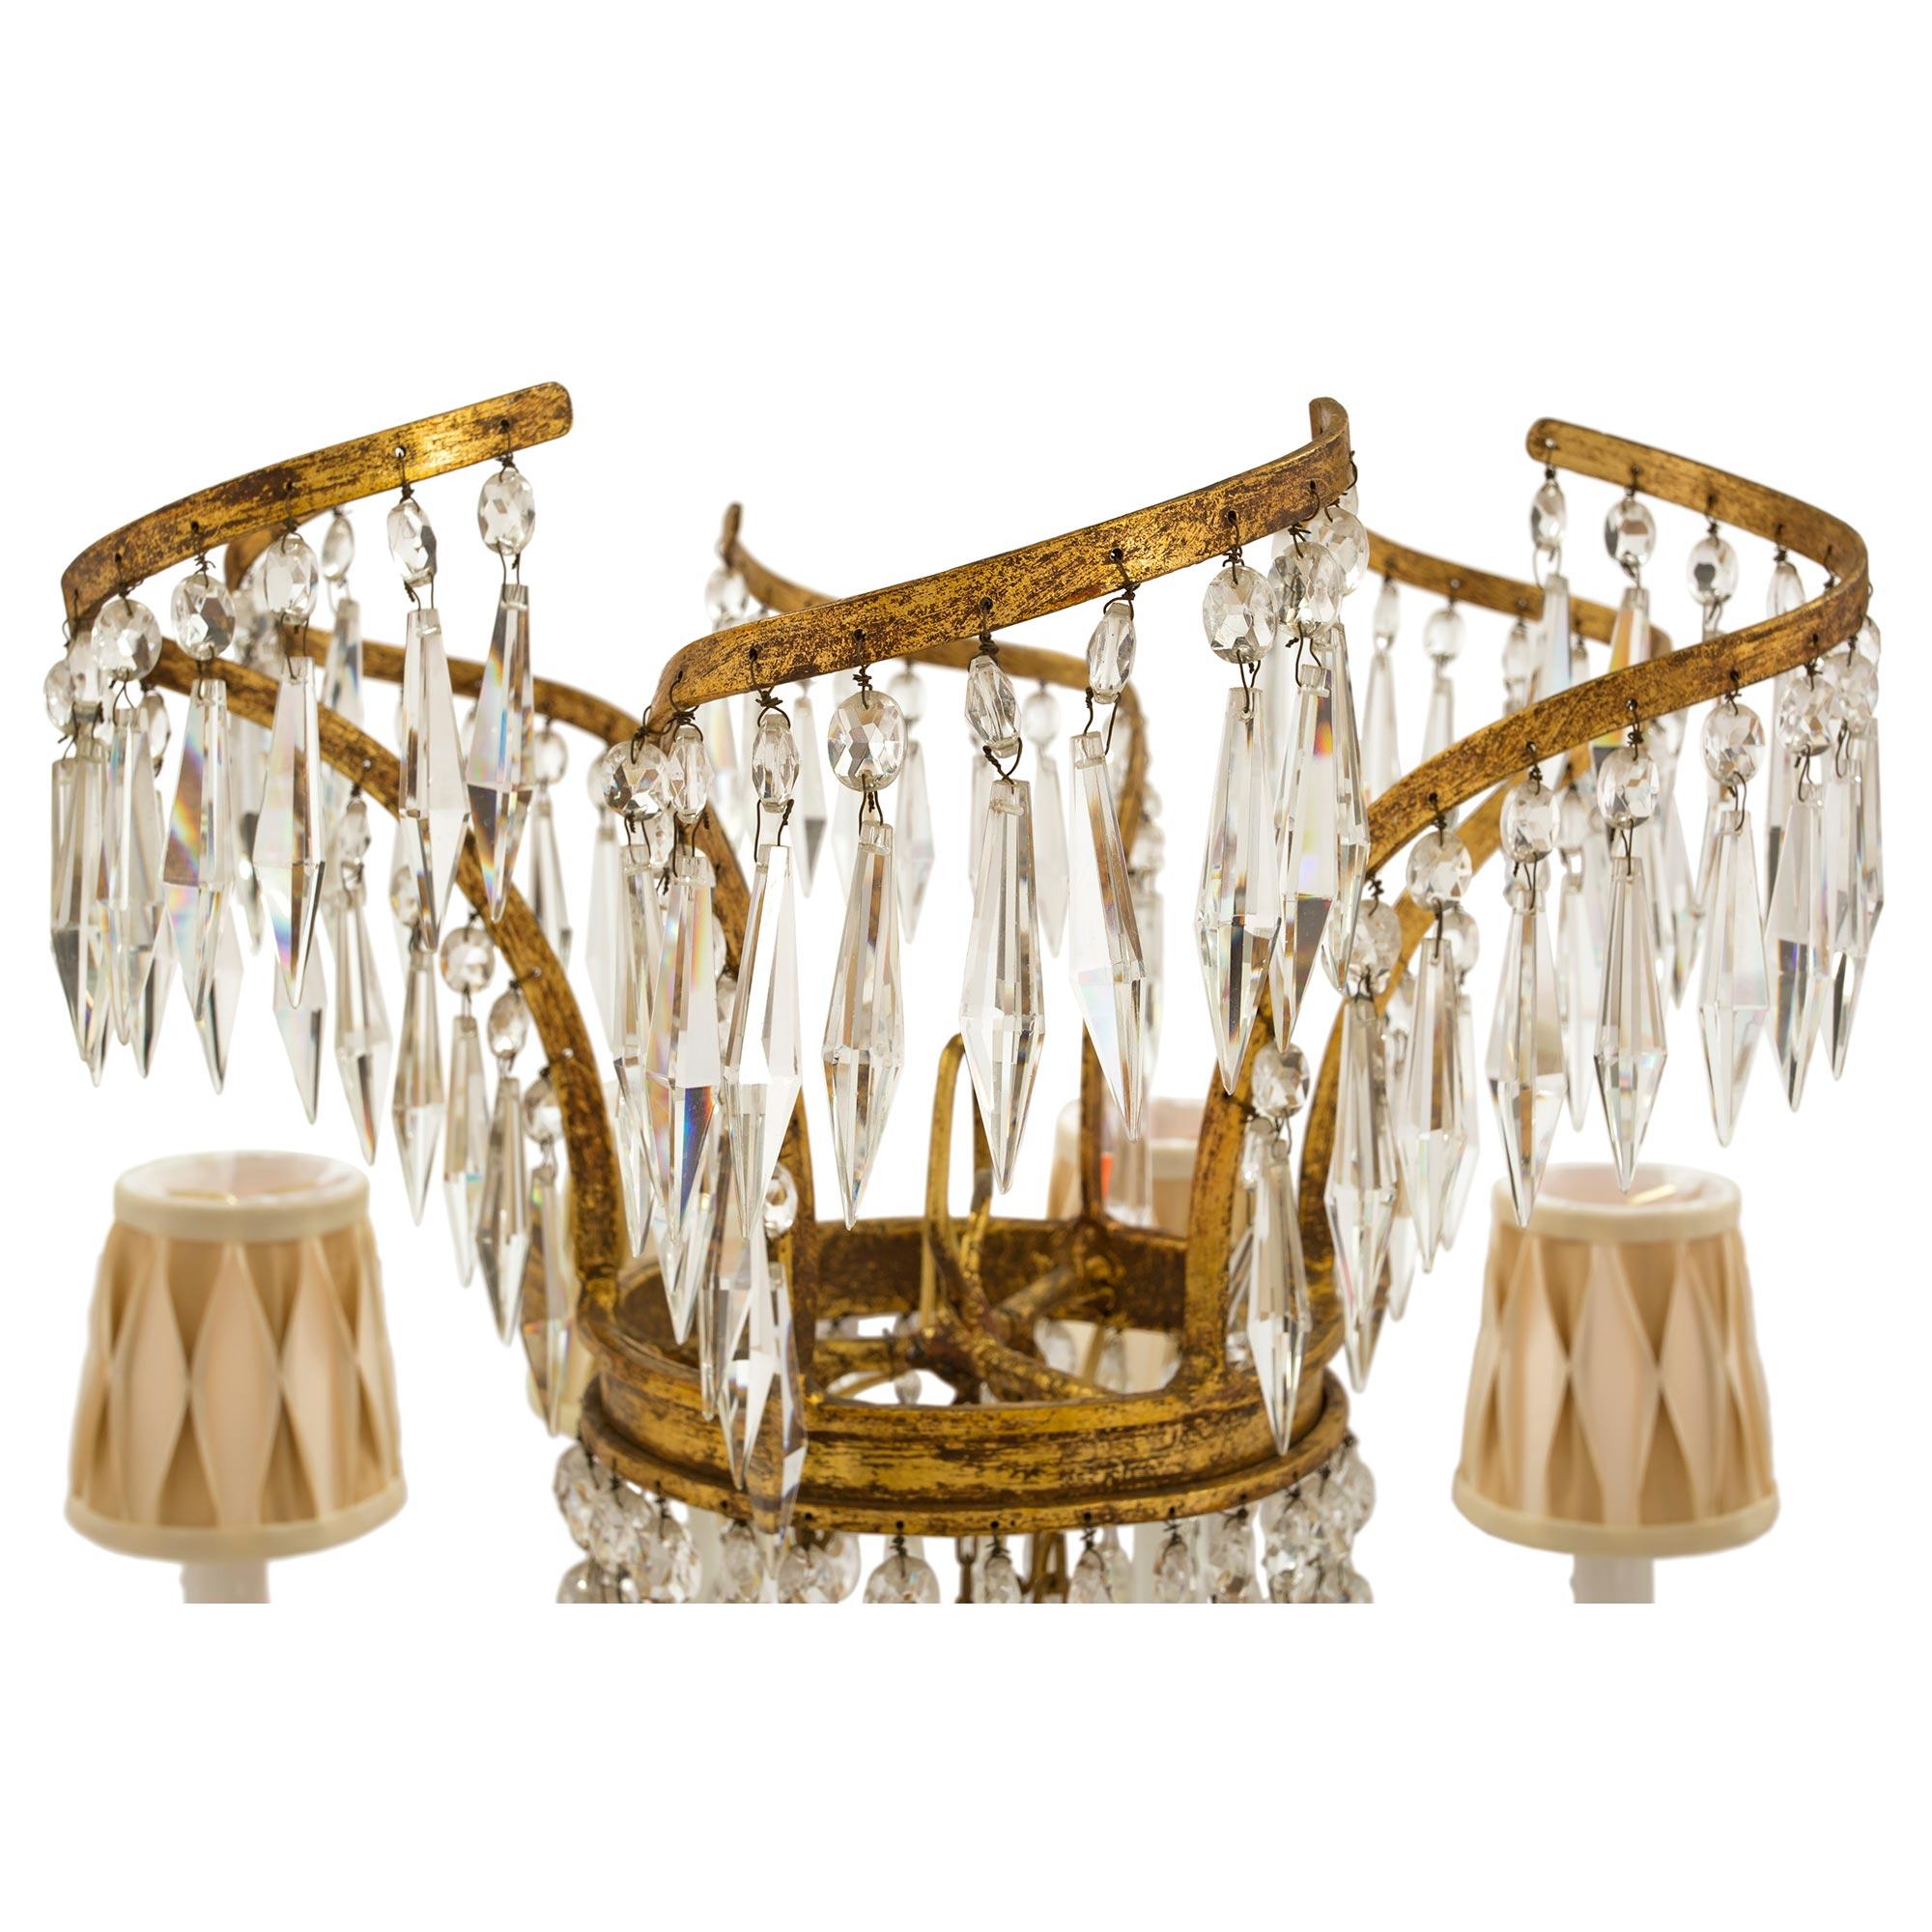 Un beau lustre balte néo-classique du 19ème siècle, en fer doré et cristal, à douze lumières. Le lustre est centré par un ensemble de cristaux prismatiques disposés en étoile de manière très décorative. Les bras de forme unique présentent des